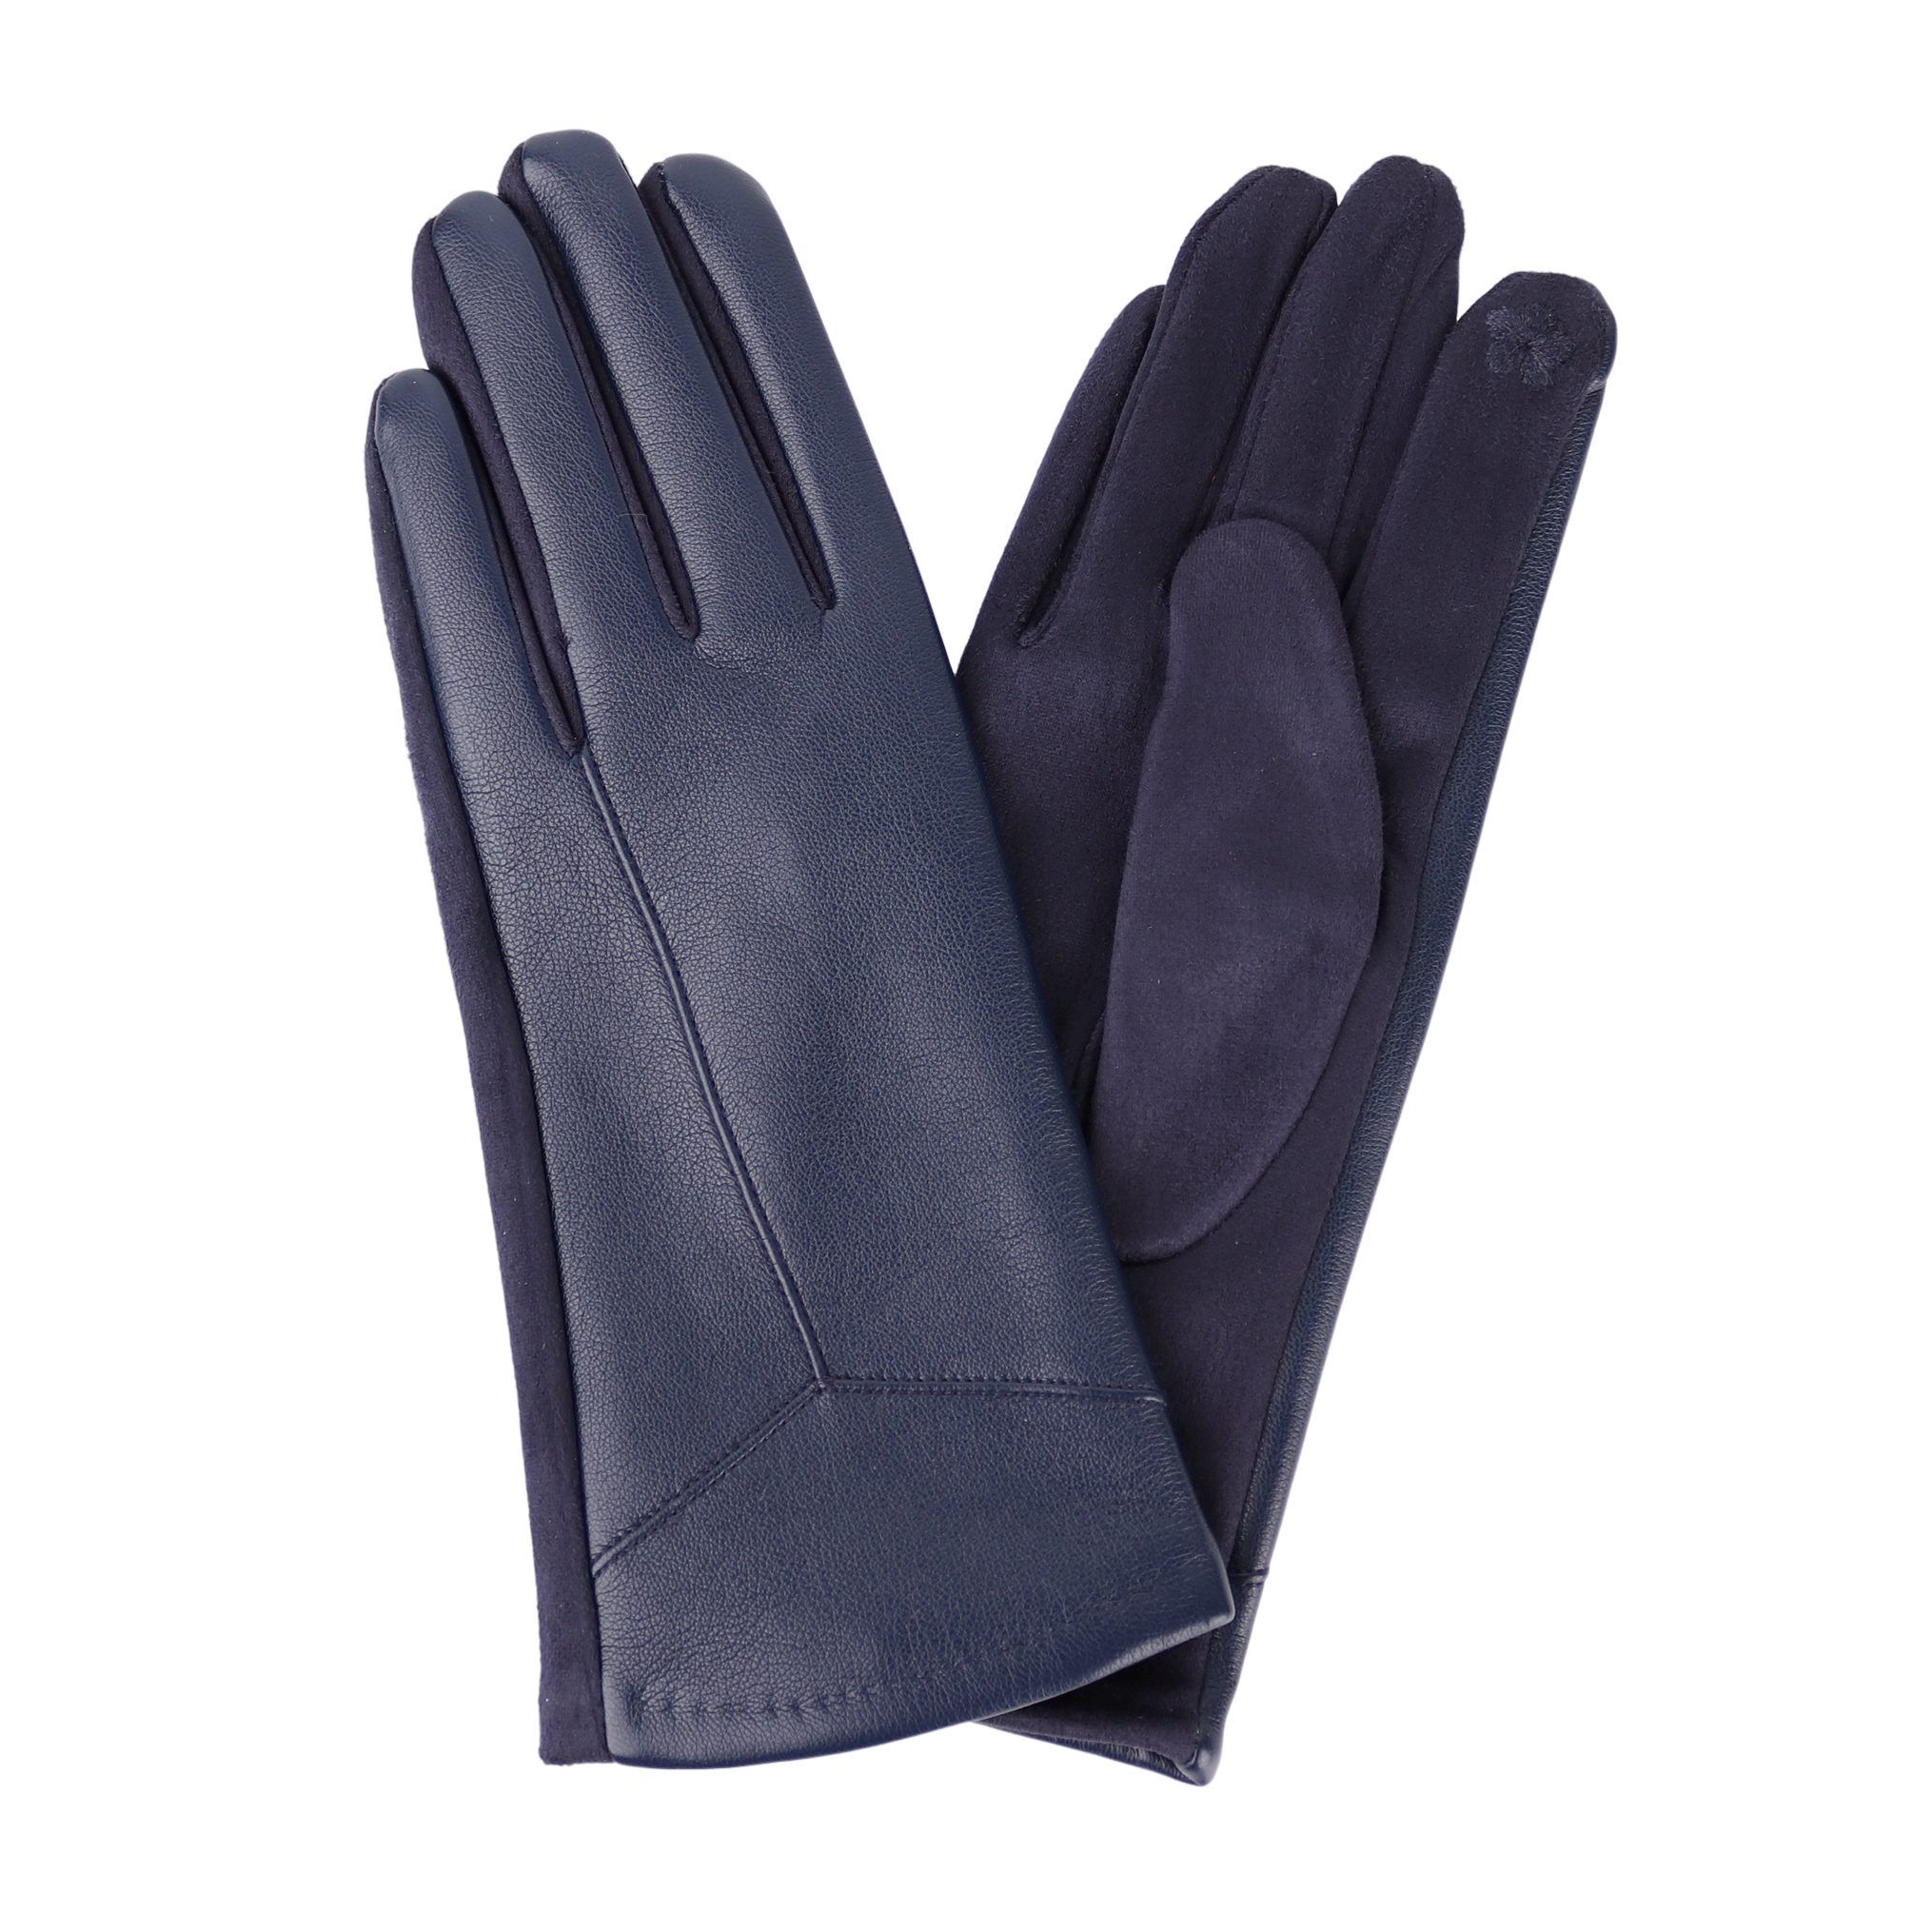 MIRROSI Lederhandschuhe Damen Touchscreen Handschuhe gefüttert Warm ONESIZE aus Veganleder sehr weich und warm ideal für Herbst oder Winter Navy